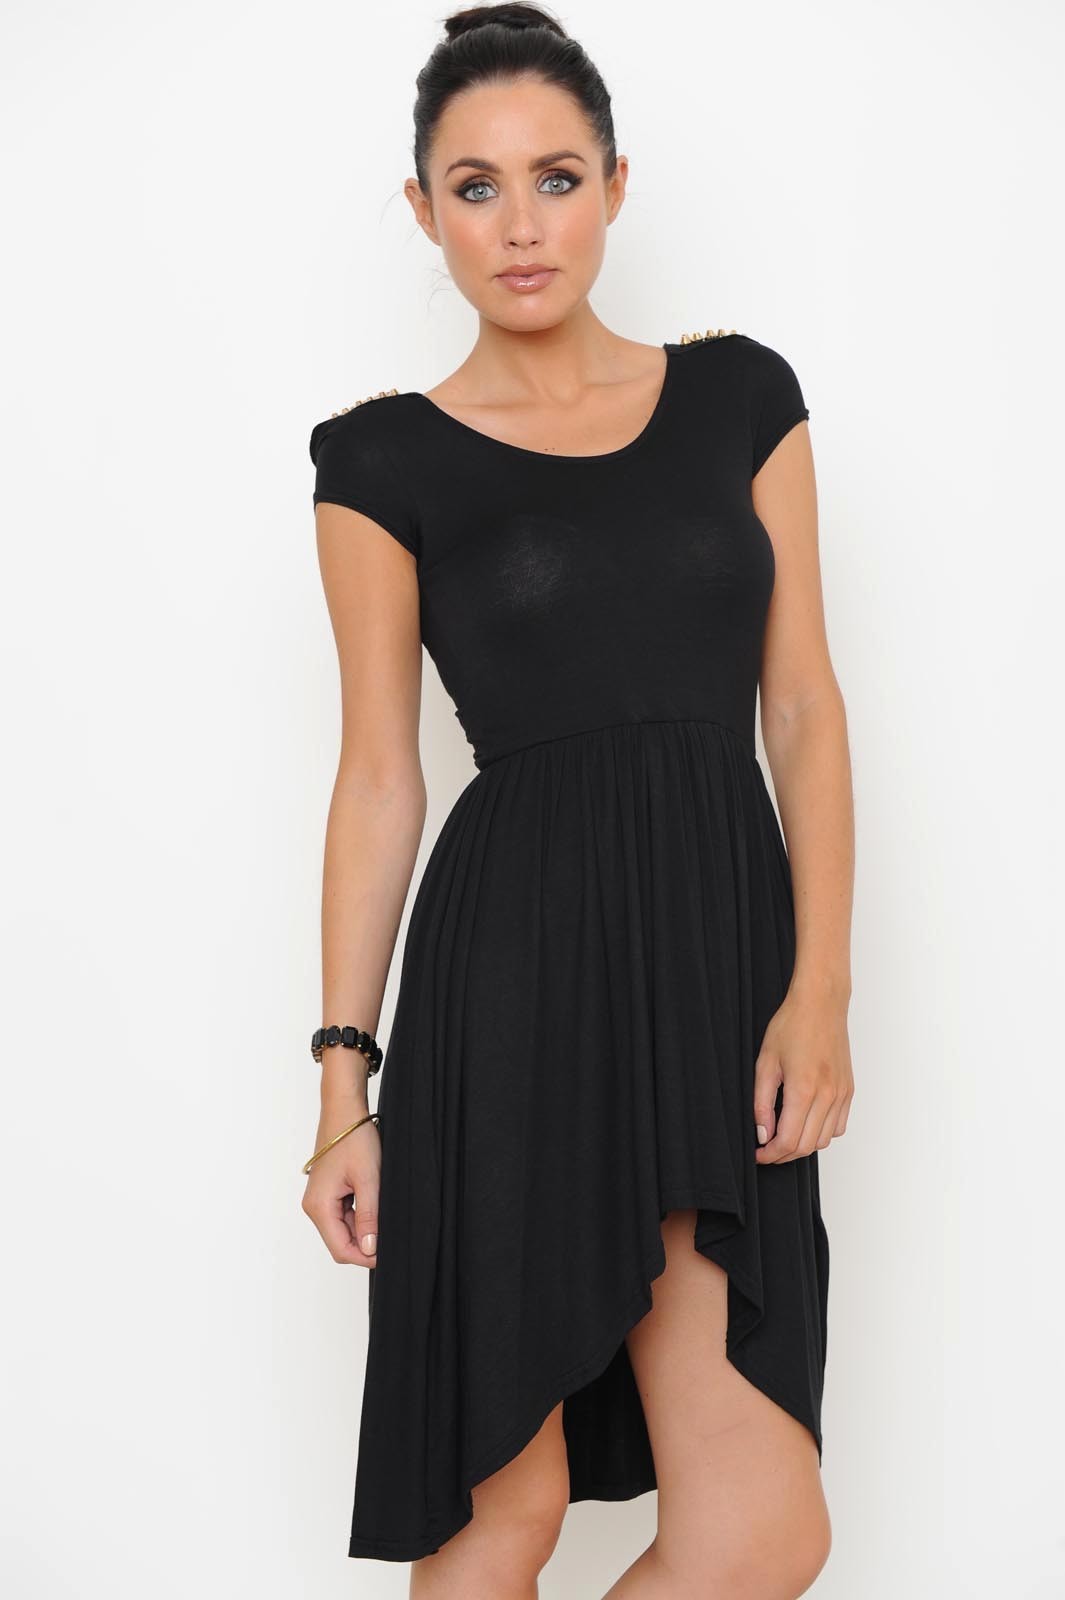 Rachel Stud Dip Hem Dress in Black | iCLOTHING